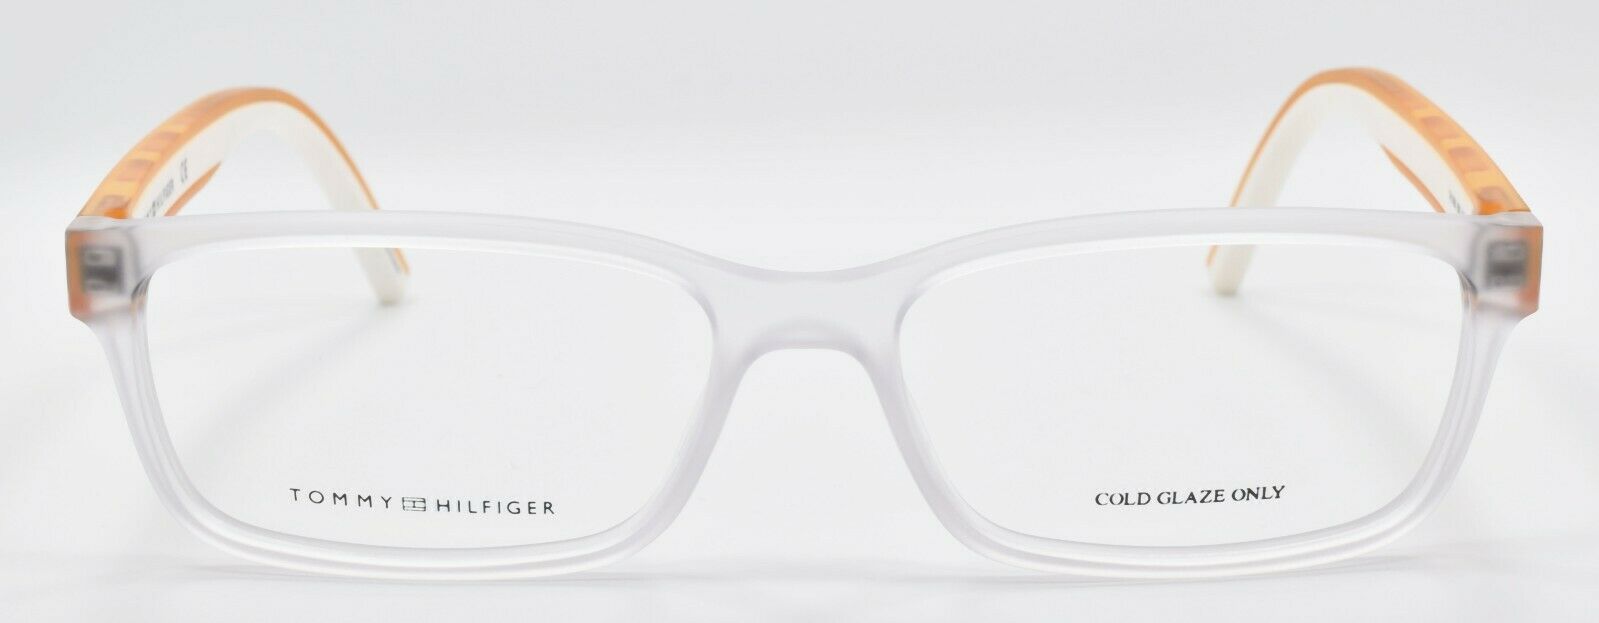 2-TOMMY HILFIGER TH 1495 900 Men's Eyeglasses Frames 54-16-145 Crystal / Orange-762753629838-IKSpecs